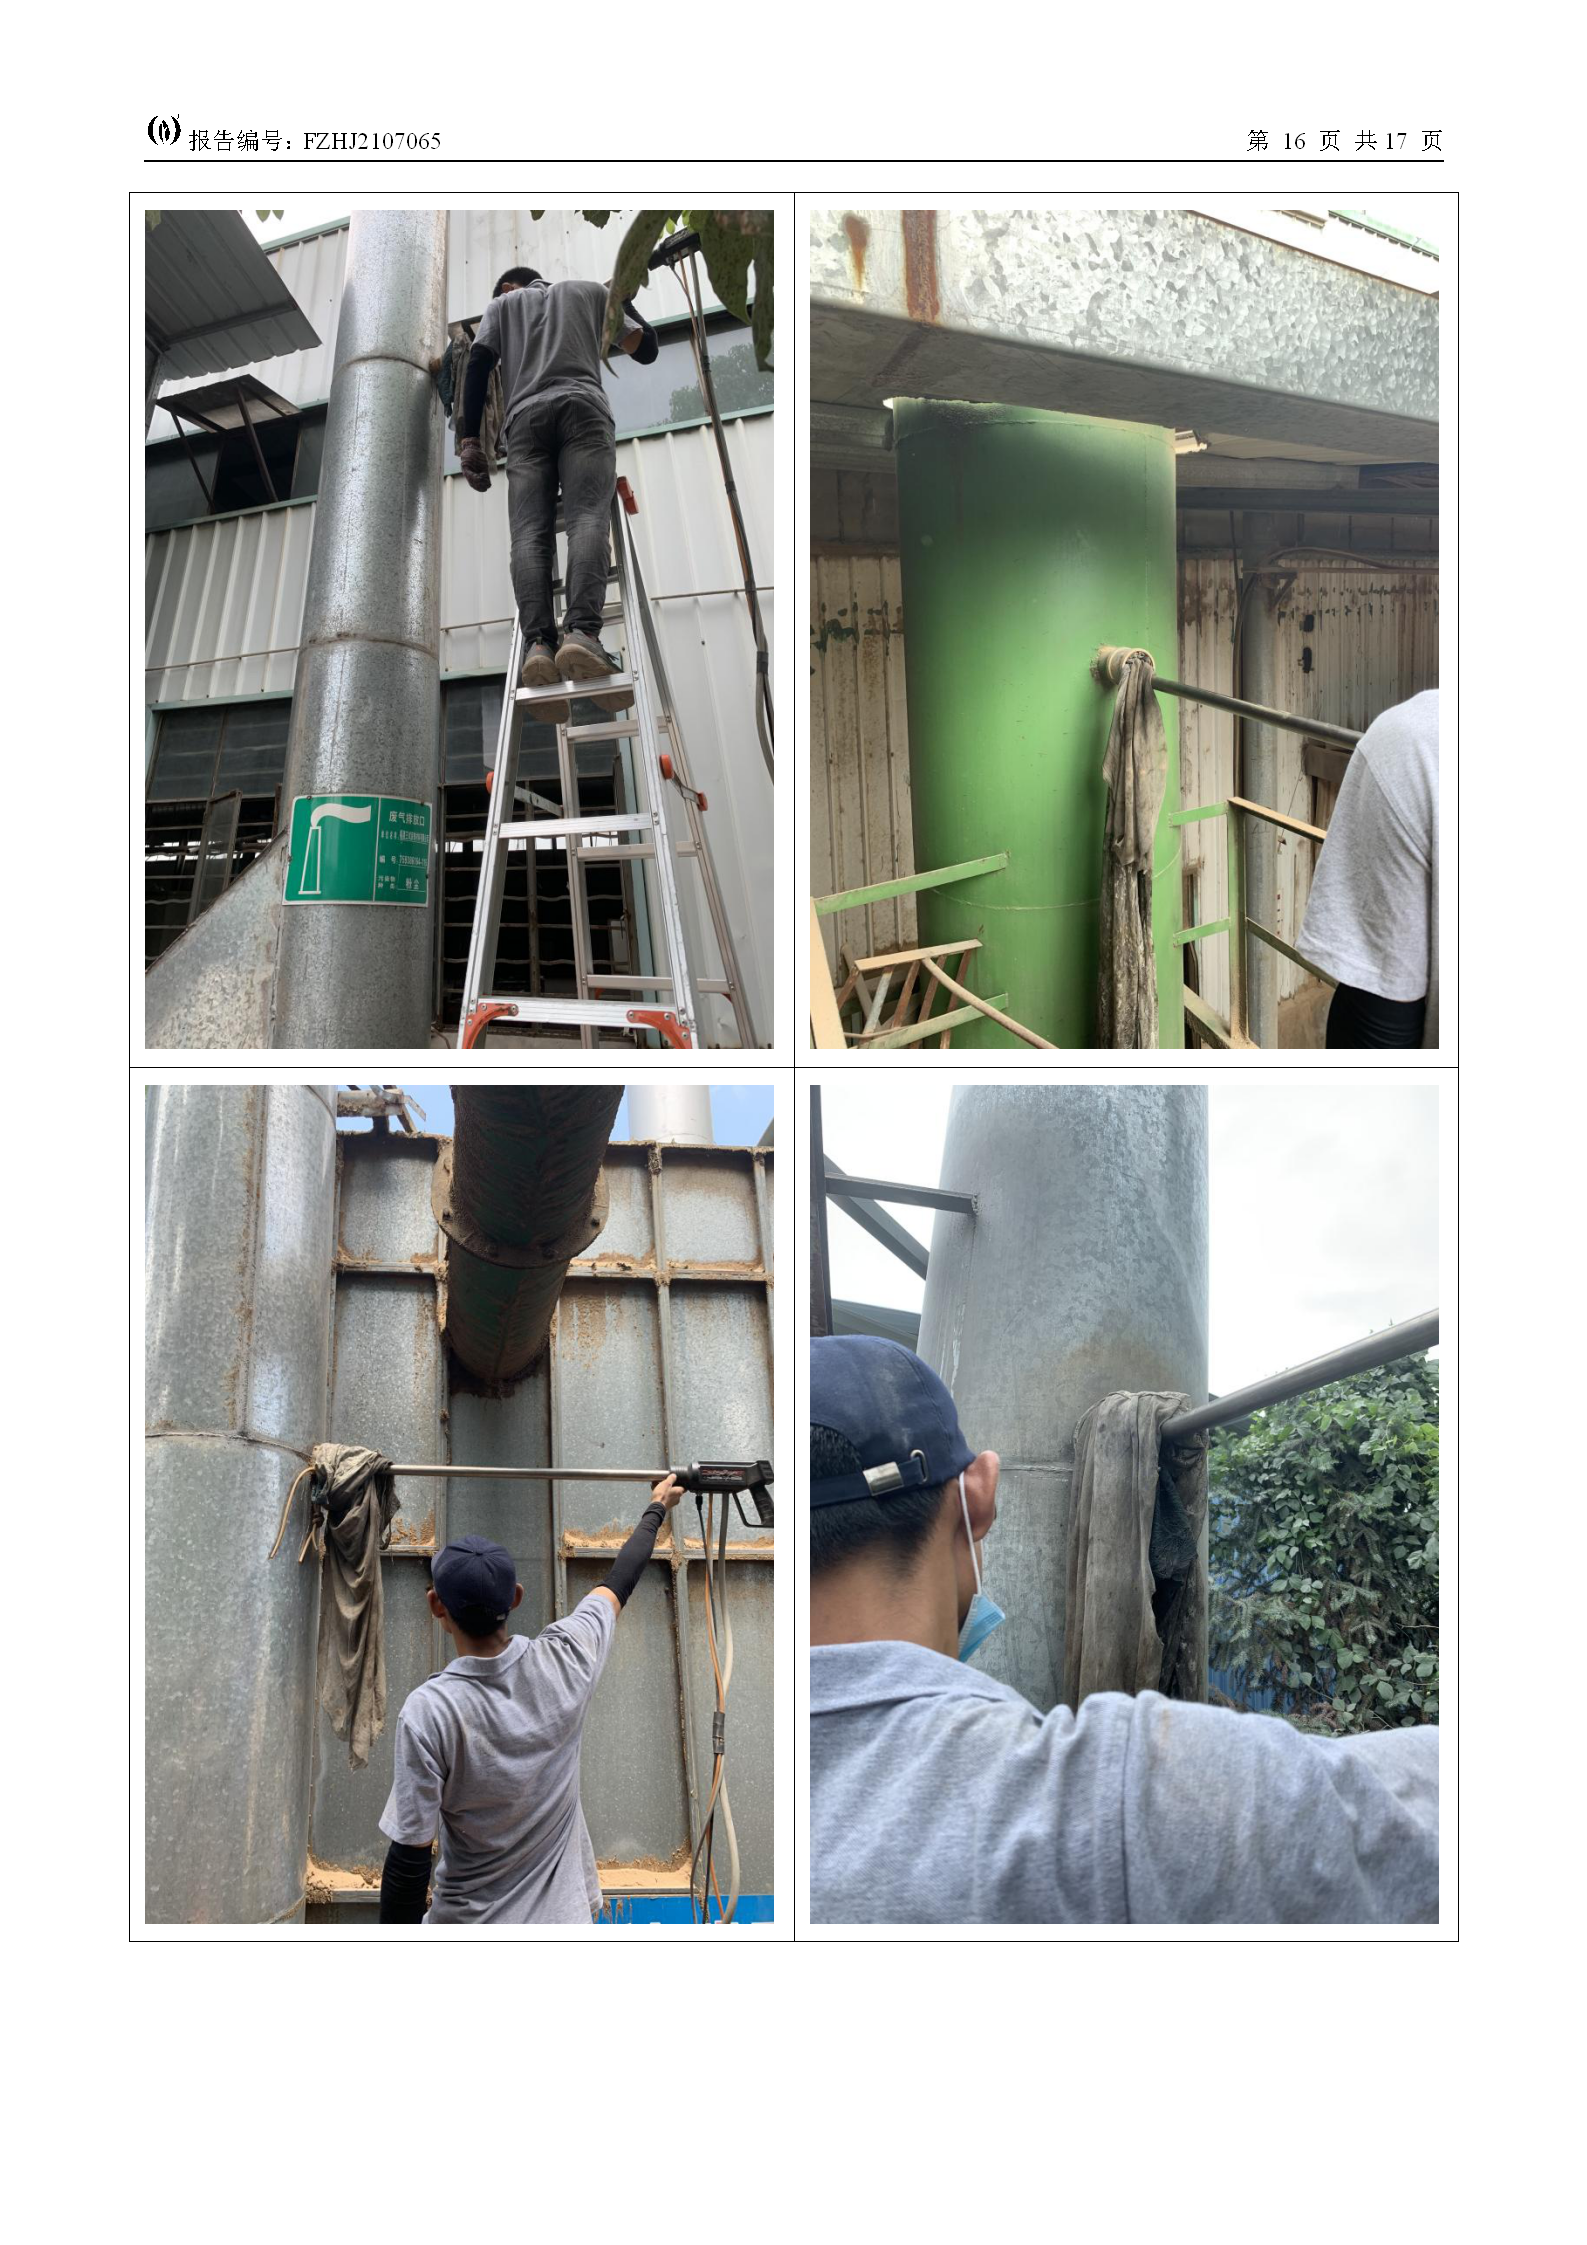 FZHJ2107065福建王斌裝飾材料有限公司（2021年7月份）環境檢測(1)_18.png